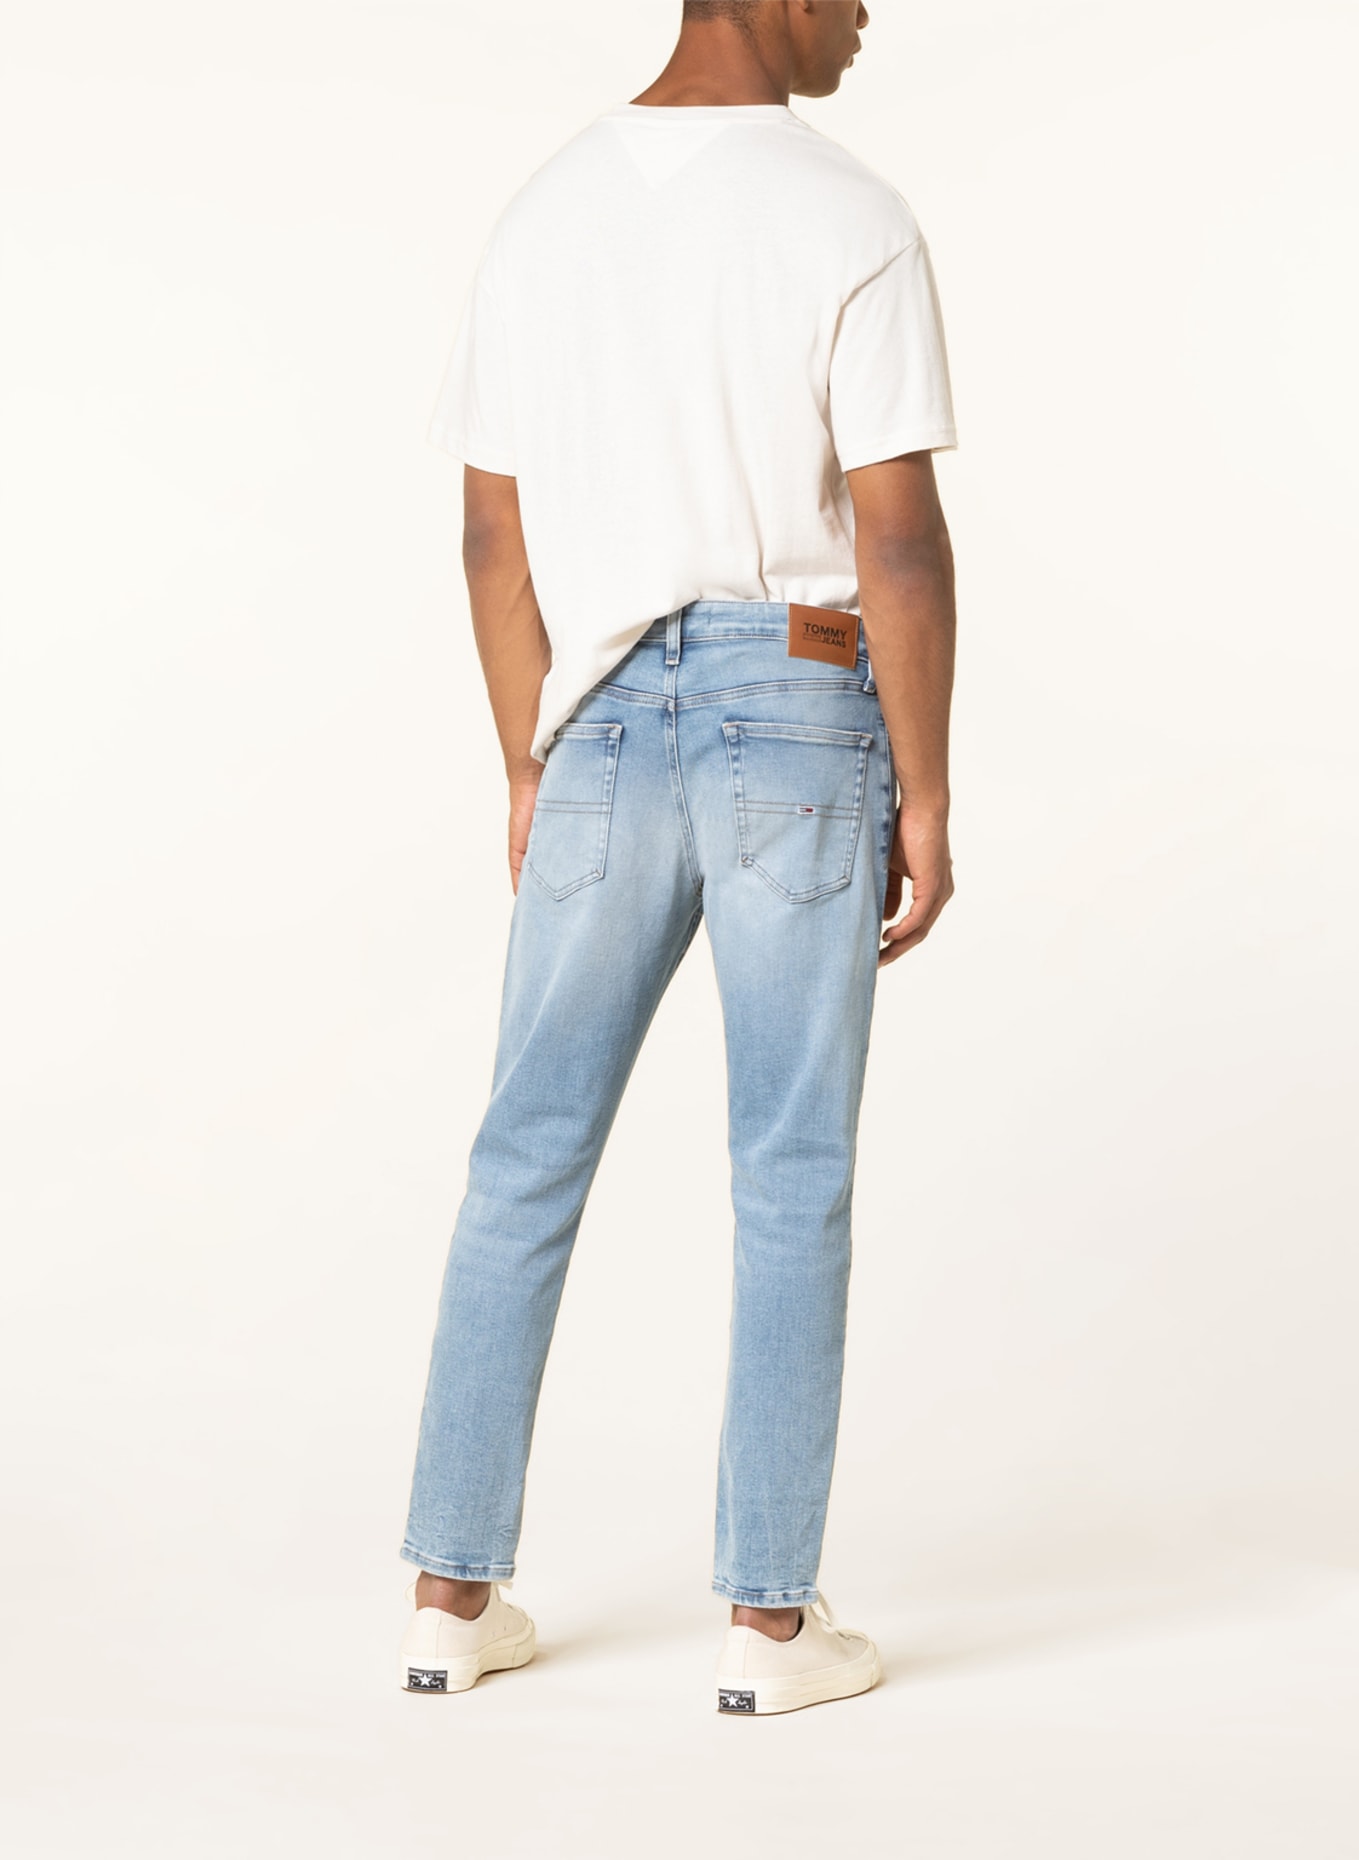 TOMMY JEANS Jeans AUSTIN slim tapered fit, Color: 1BK Denim Light (Image 3)